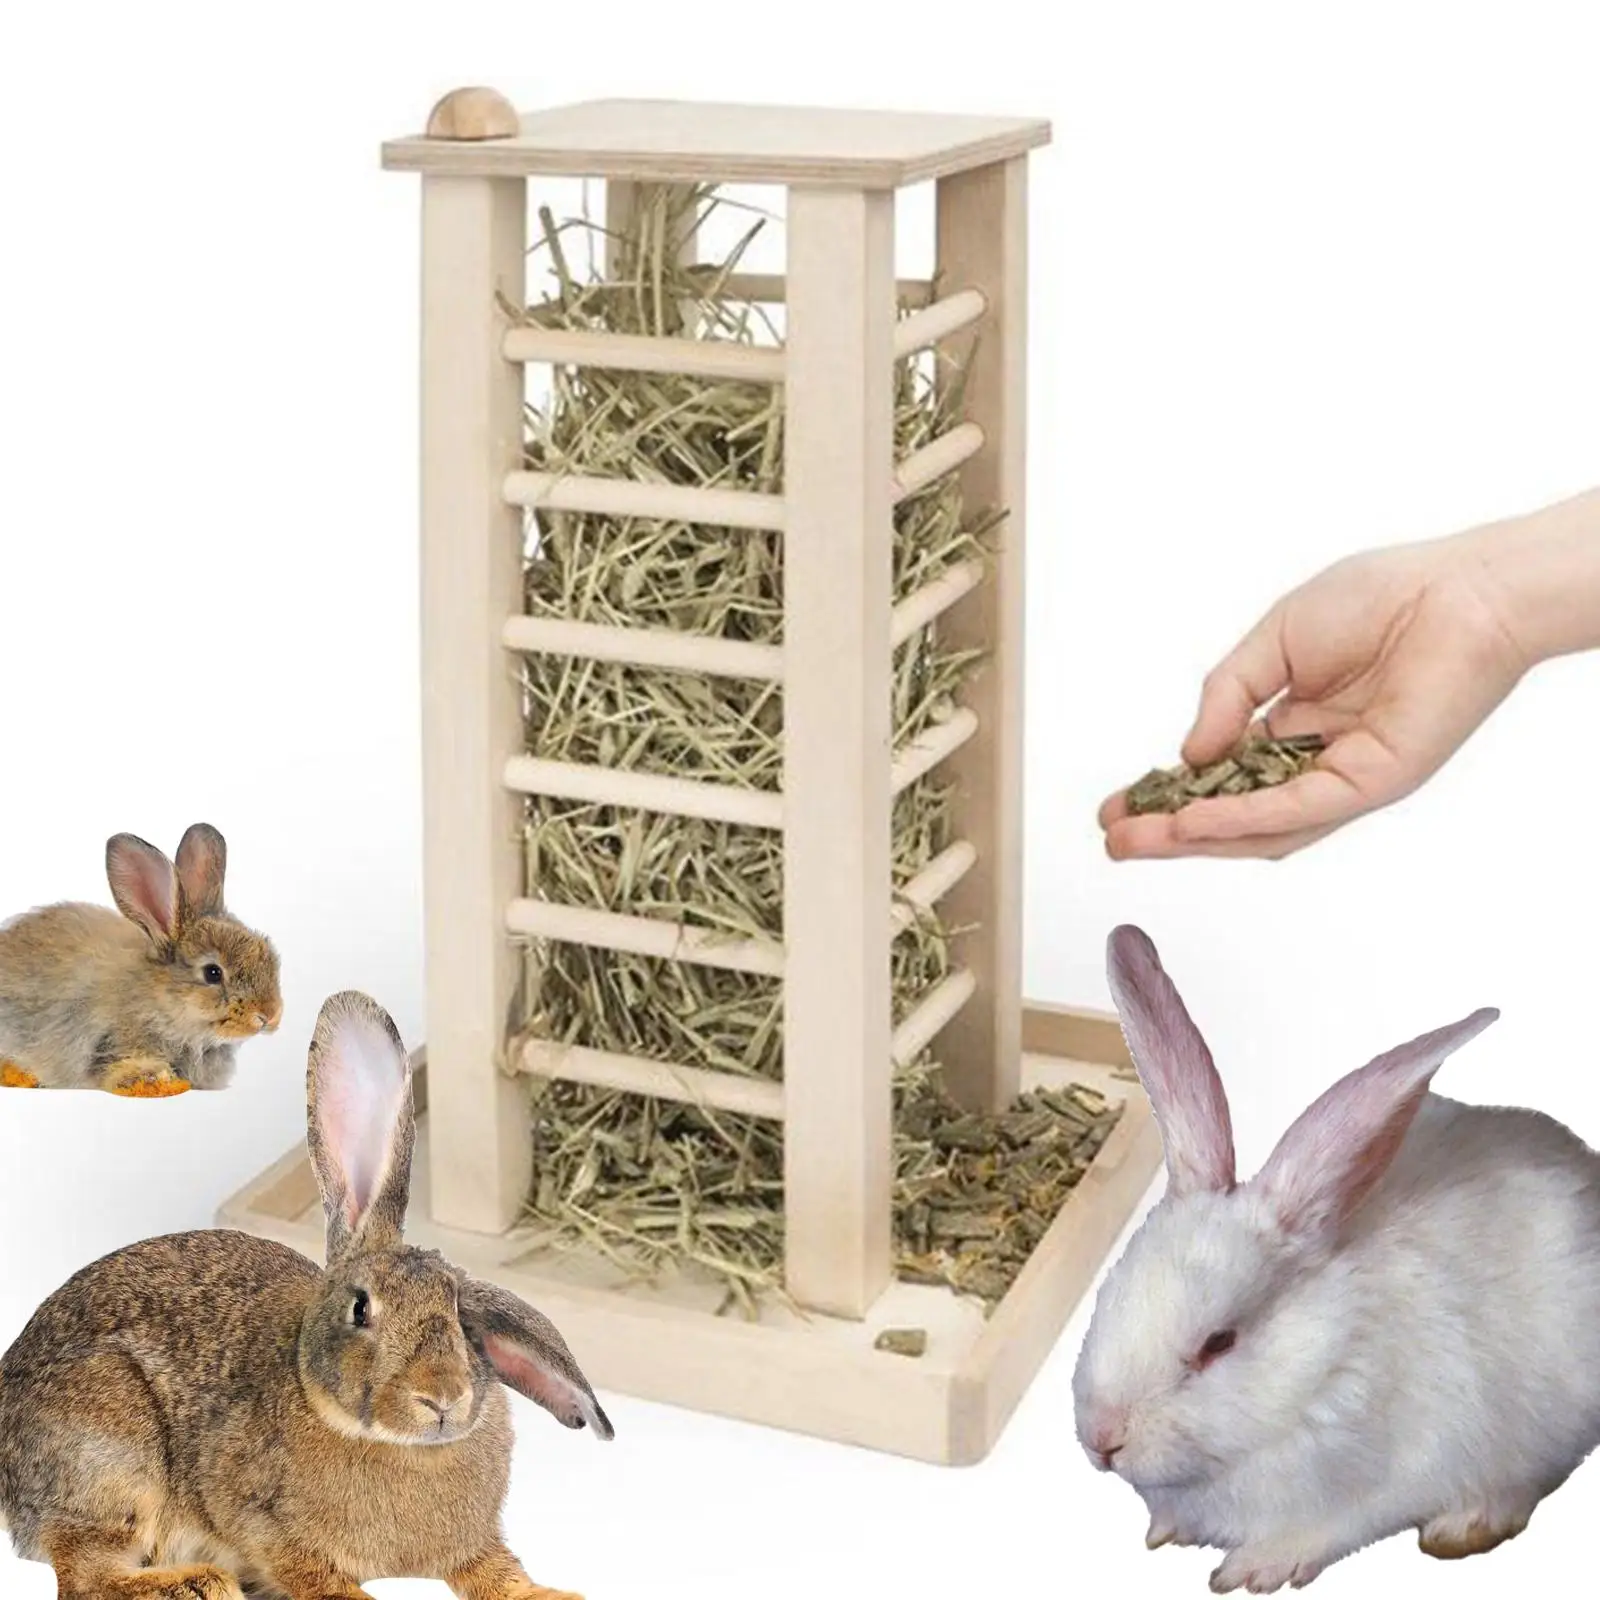 Проверенные способы: как сделать кормушку для кроликов своими руками